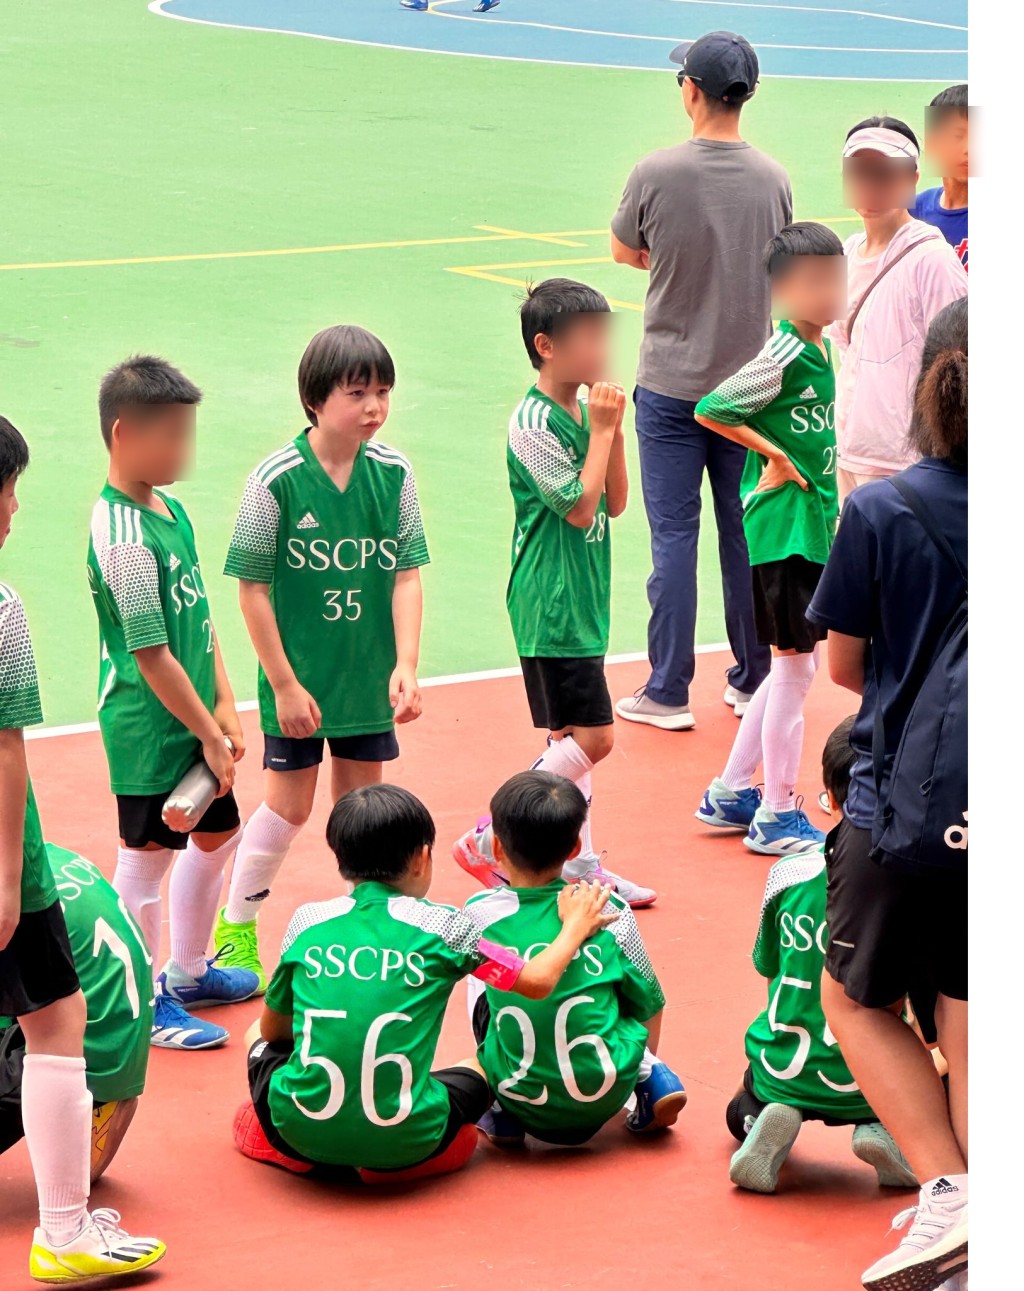 穿上SSCPS 35号绿色波衫的大仔雷棨宇，衬上黑色短裤、长波袜及萤光绿色鞋，犹如足球小将般。